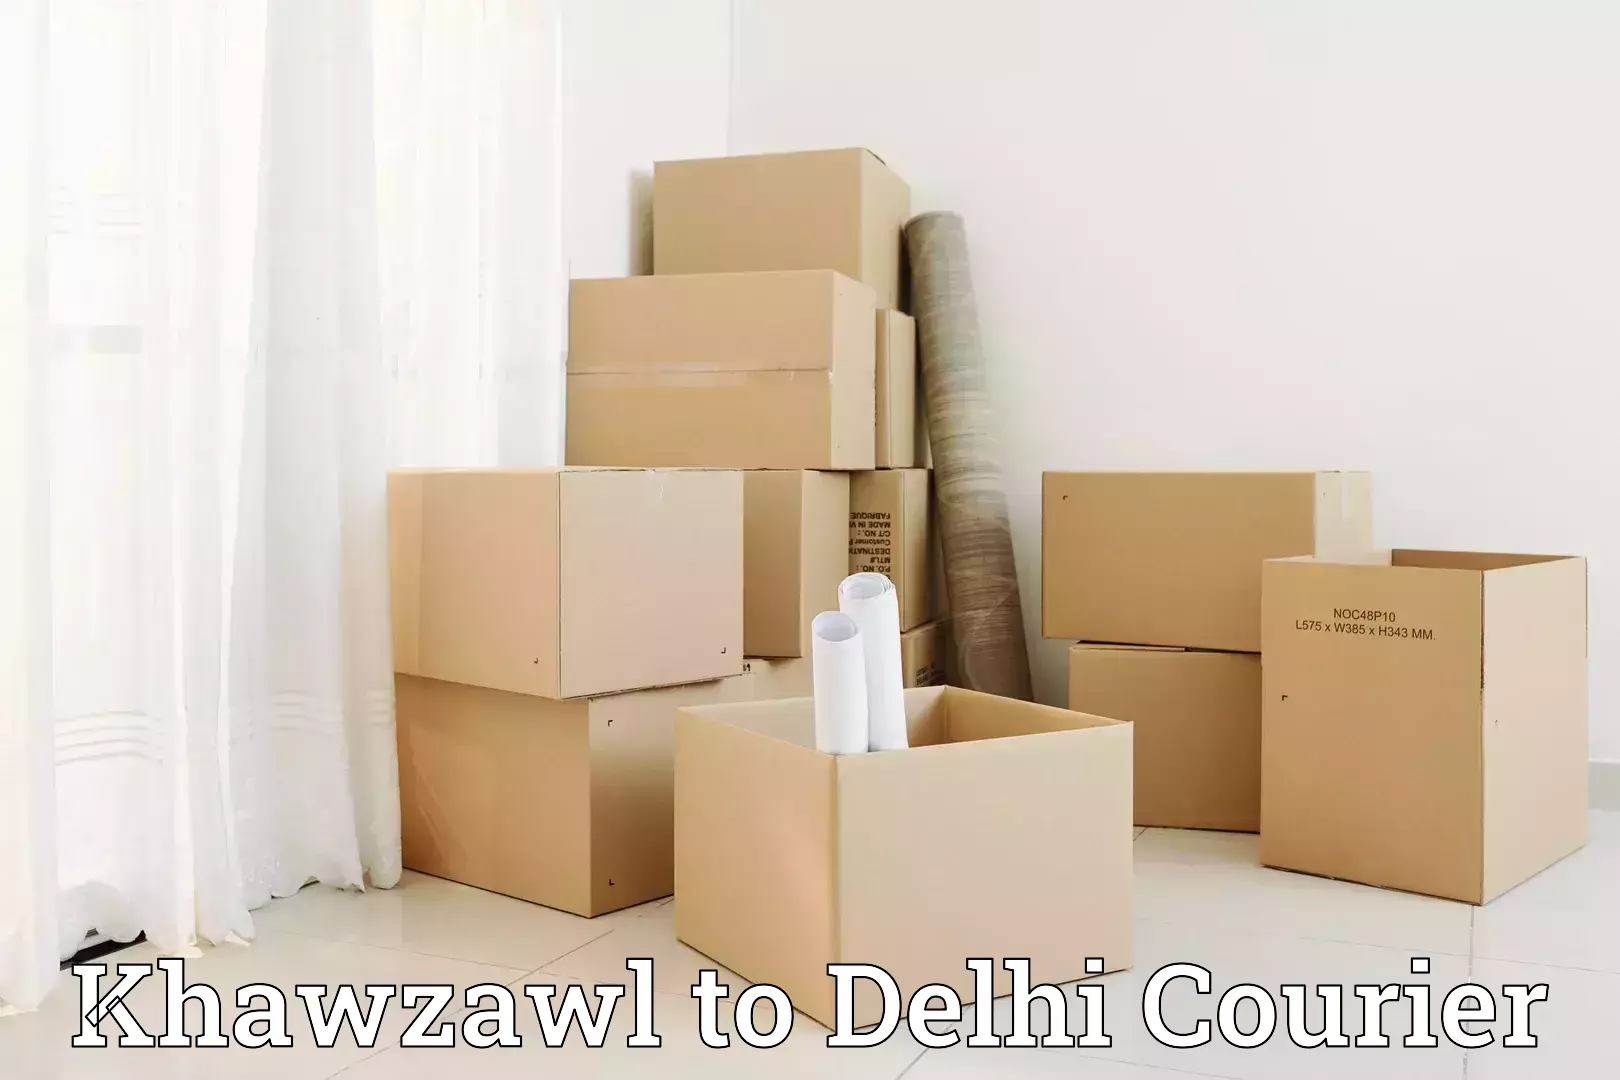 Full-service movers Khawzawl to IIT Delhi